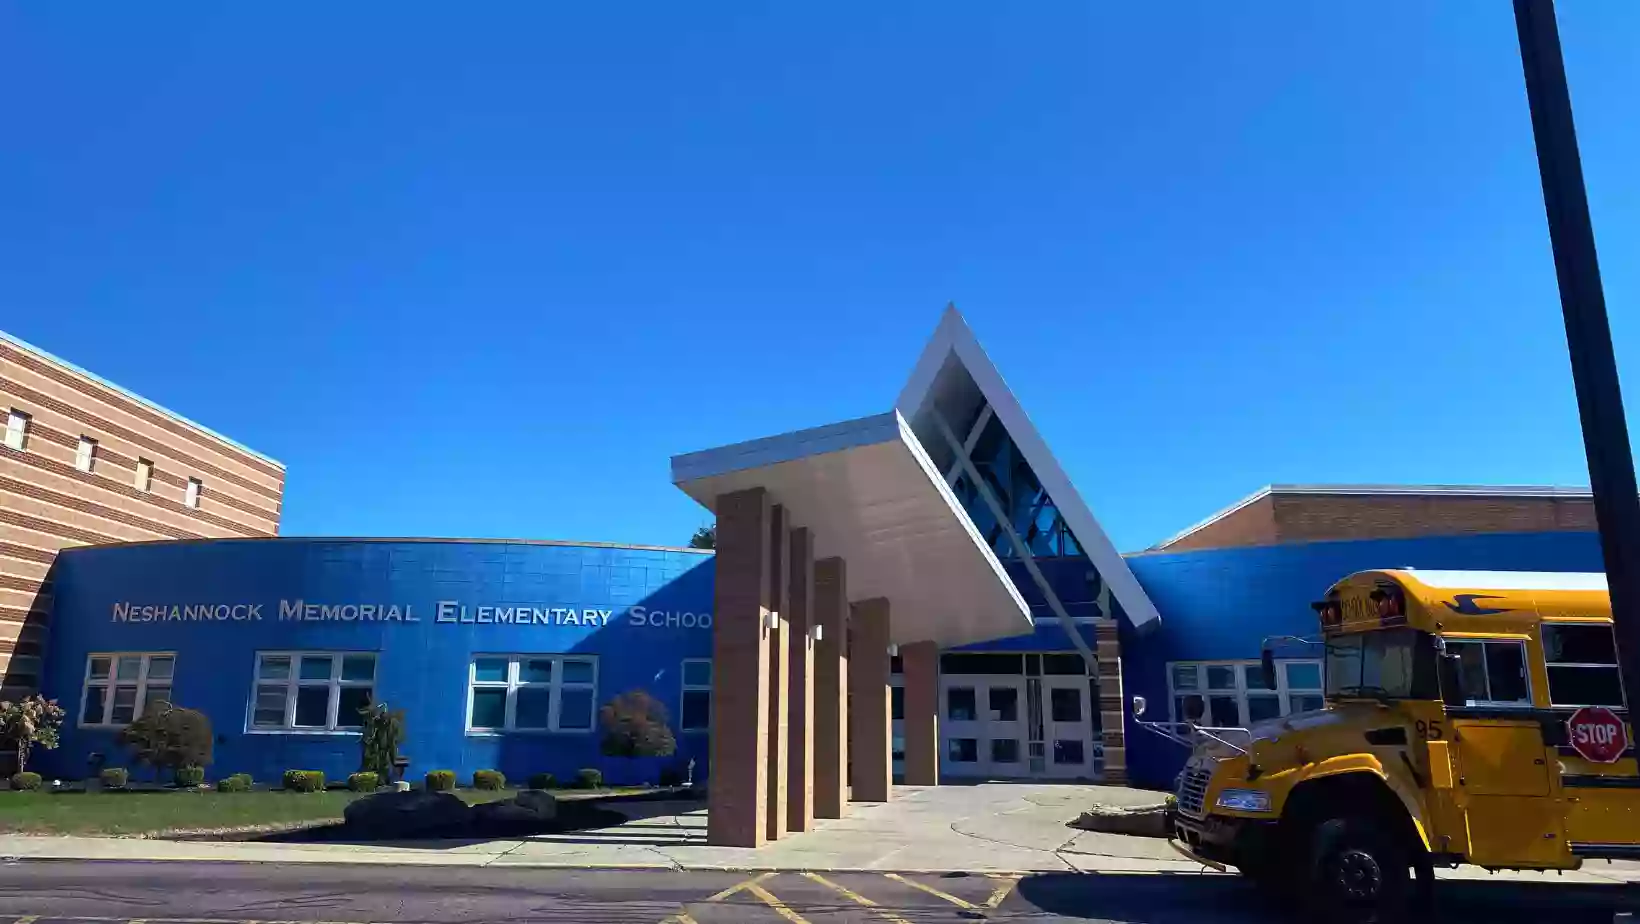 Neshannock Memorial Elementary